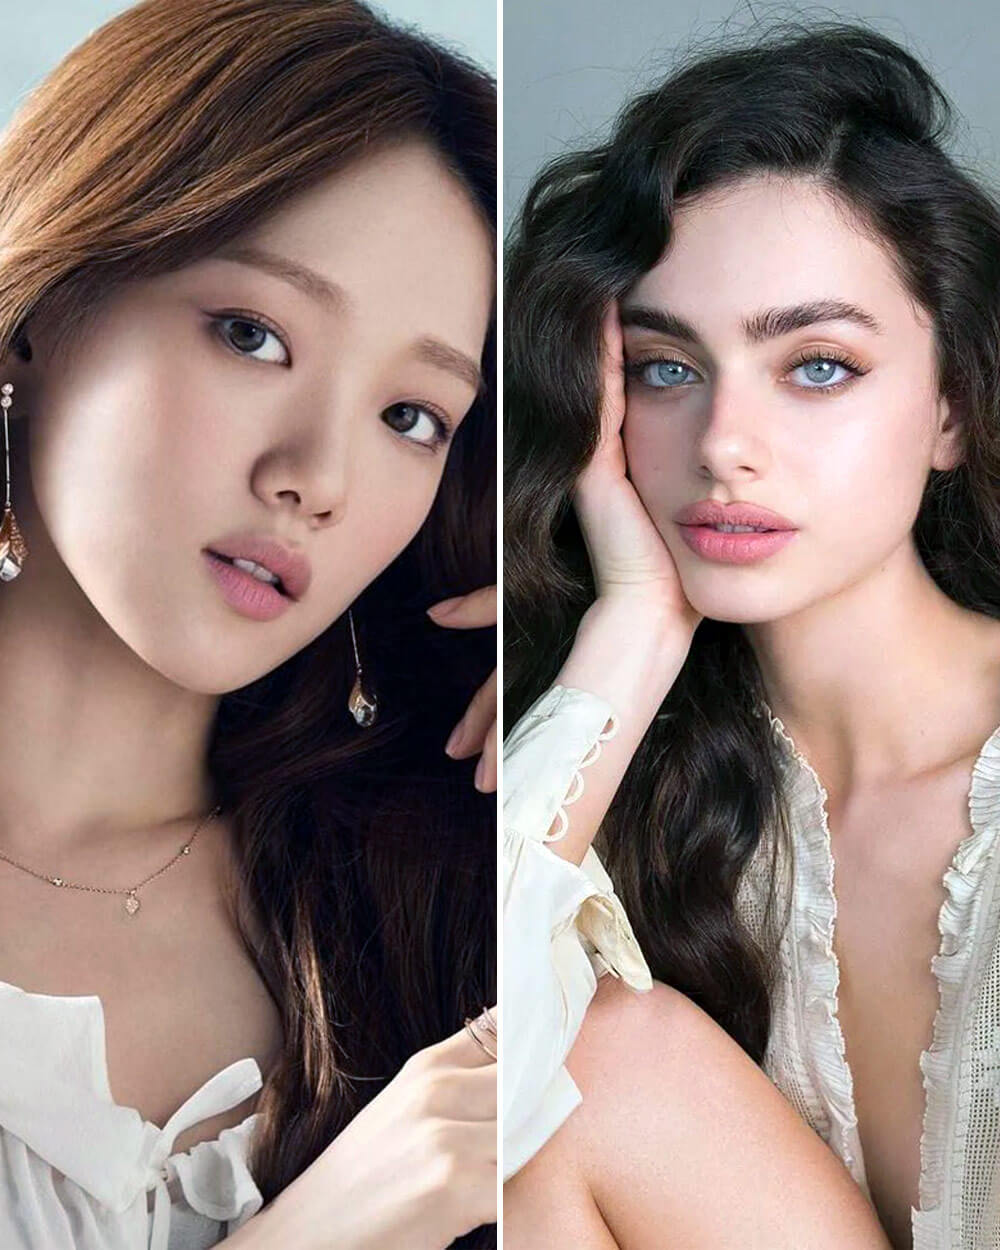 Korean vs Western Beauty Standards